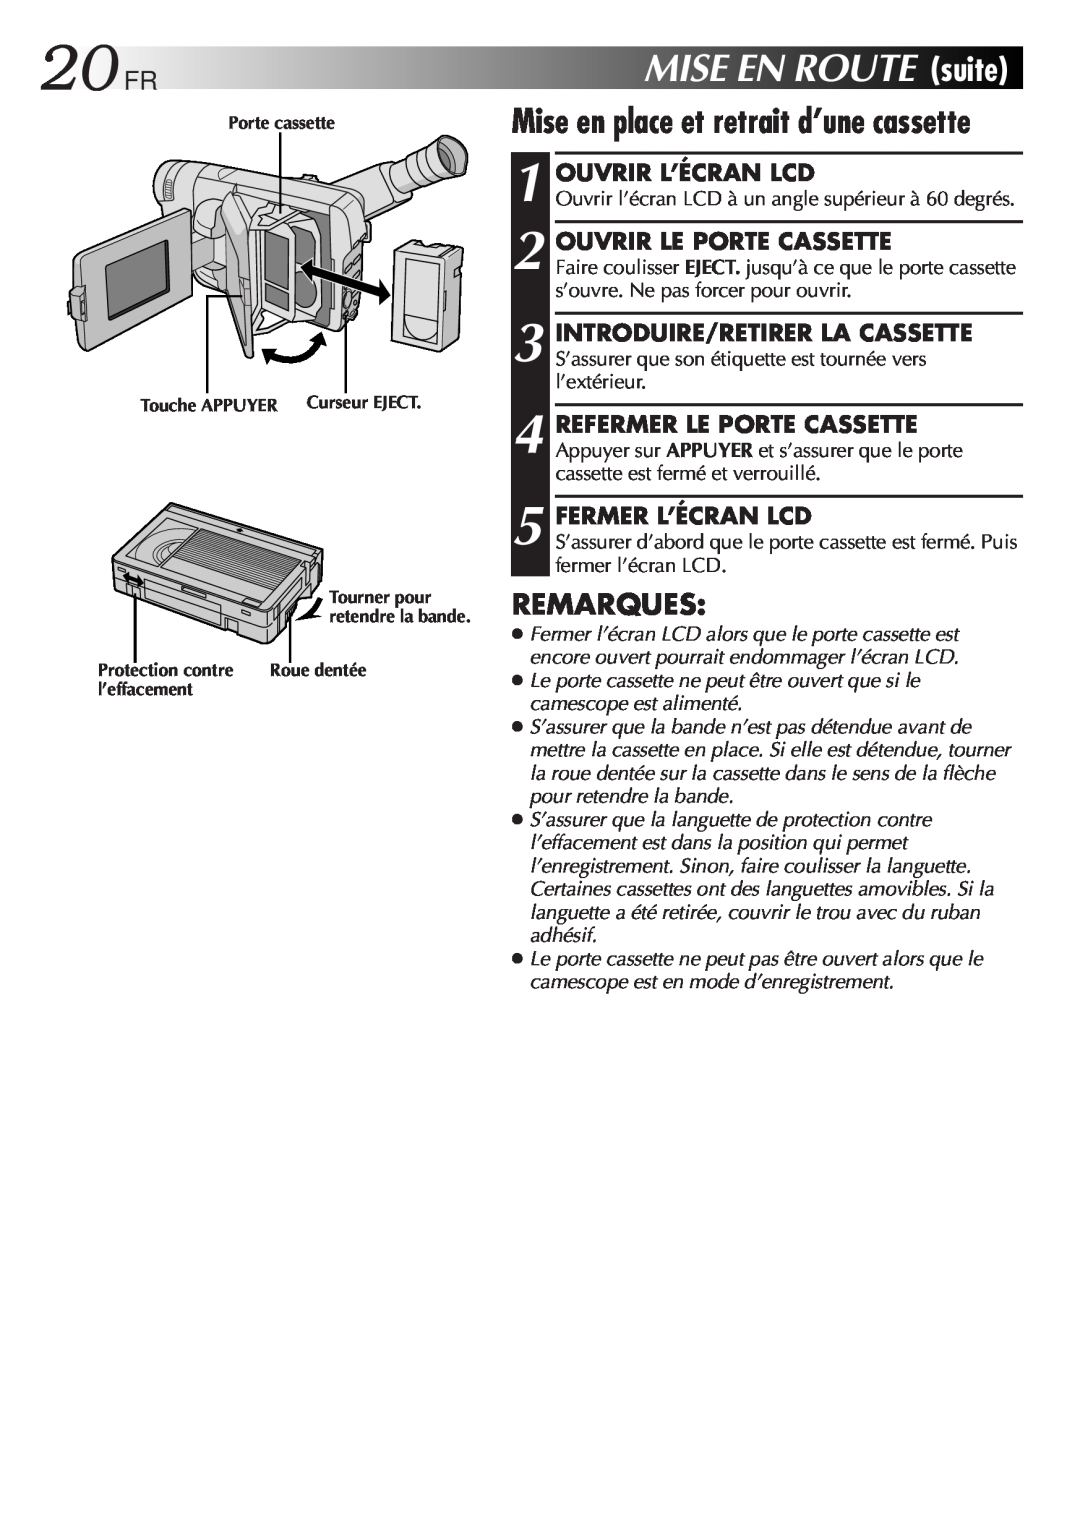 JVC GR-FXM106S manual 20FR, Mise en place et retrait d’une cassette, MISEENROUTEsuite, Remarques, Ouvrir L’Écran Lcd 